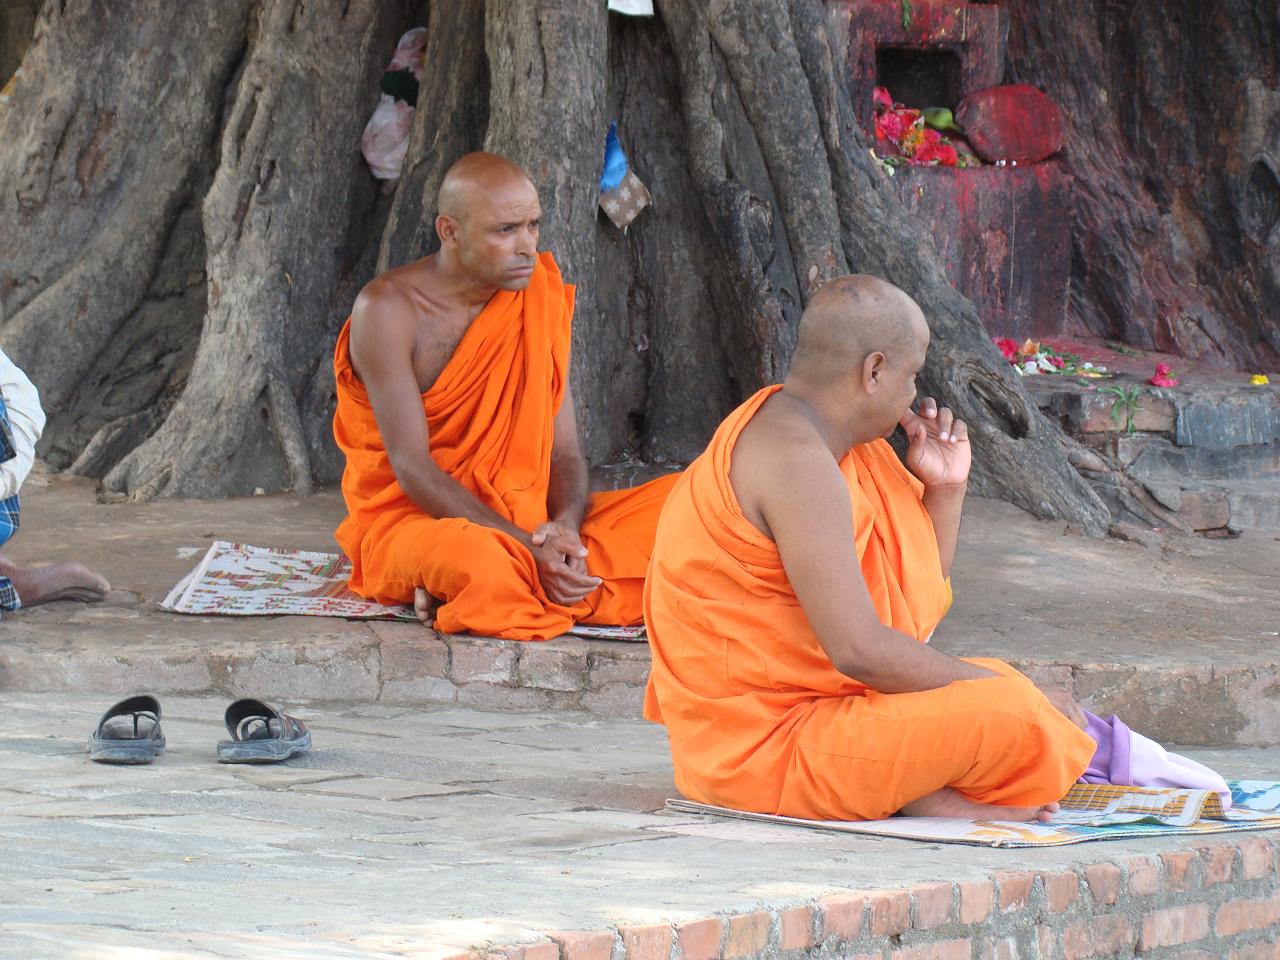 Буддийские монахи в Лумбини (место рождения Будды, Непал). Фото сделано издалека с 8-кратным оптическим зумом, чтобы не отвлекать монахов.